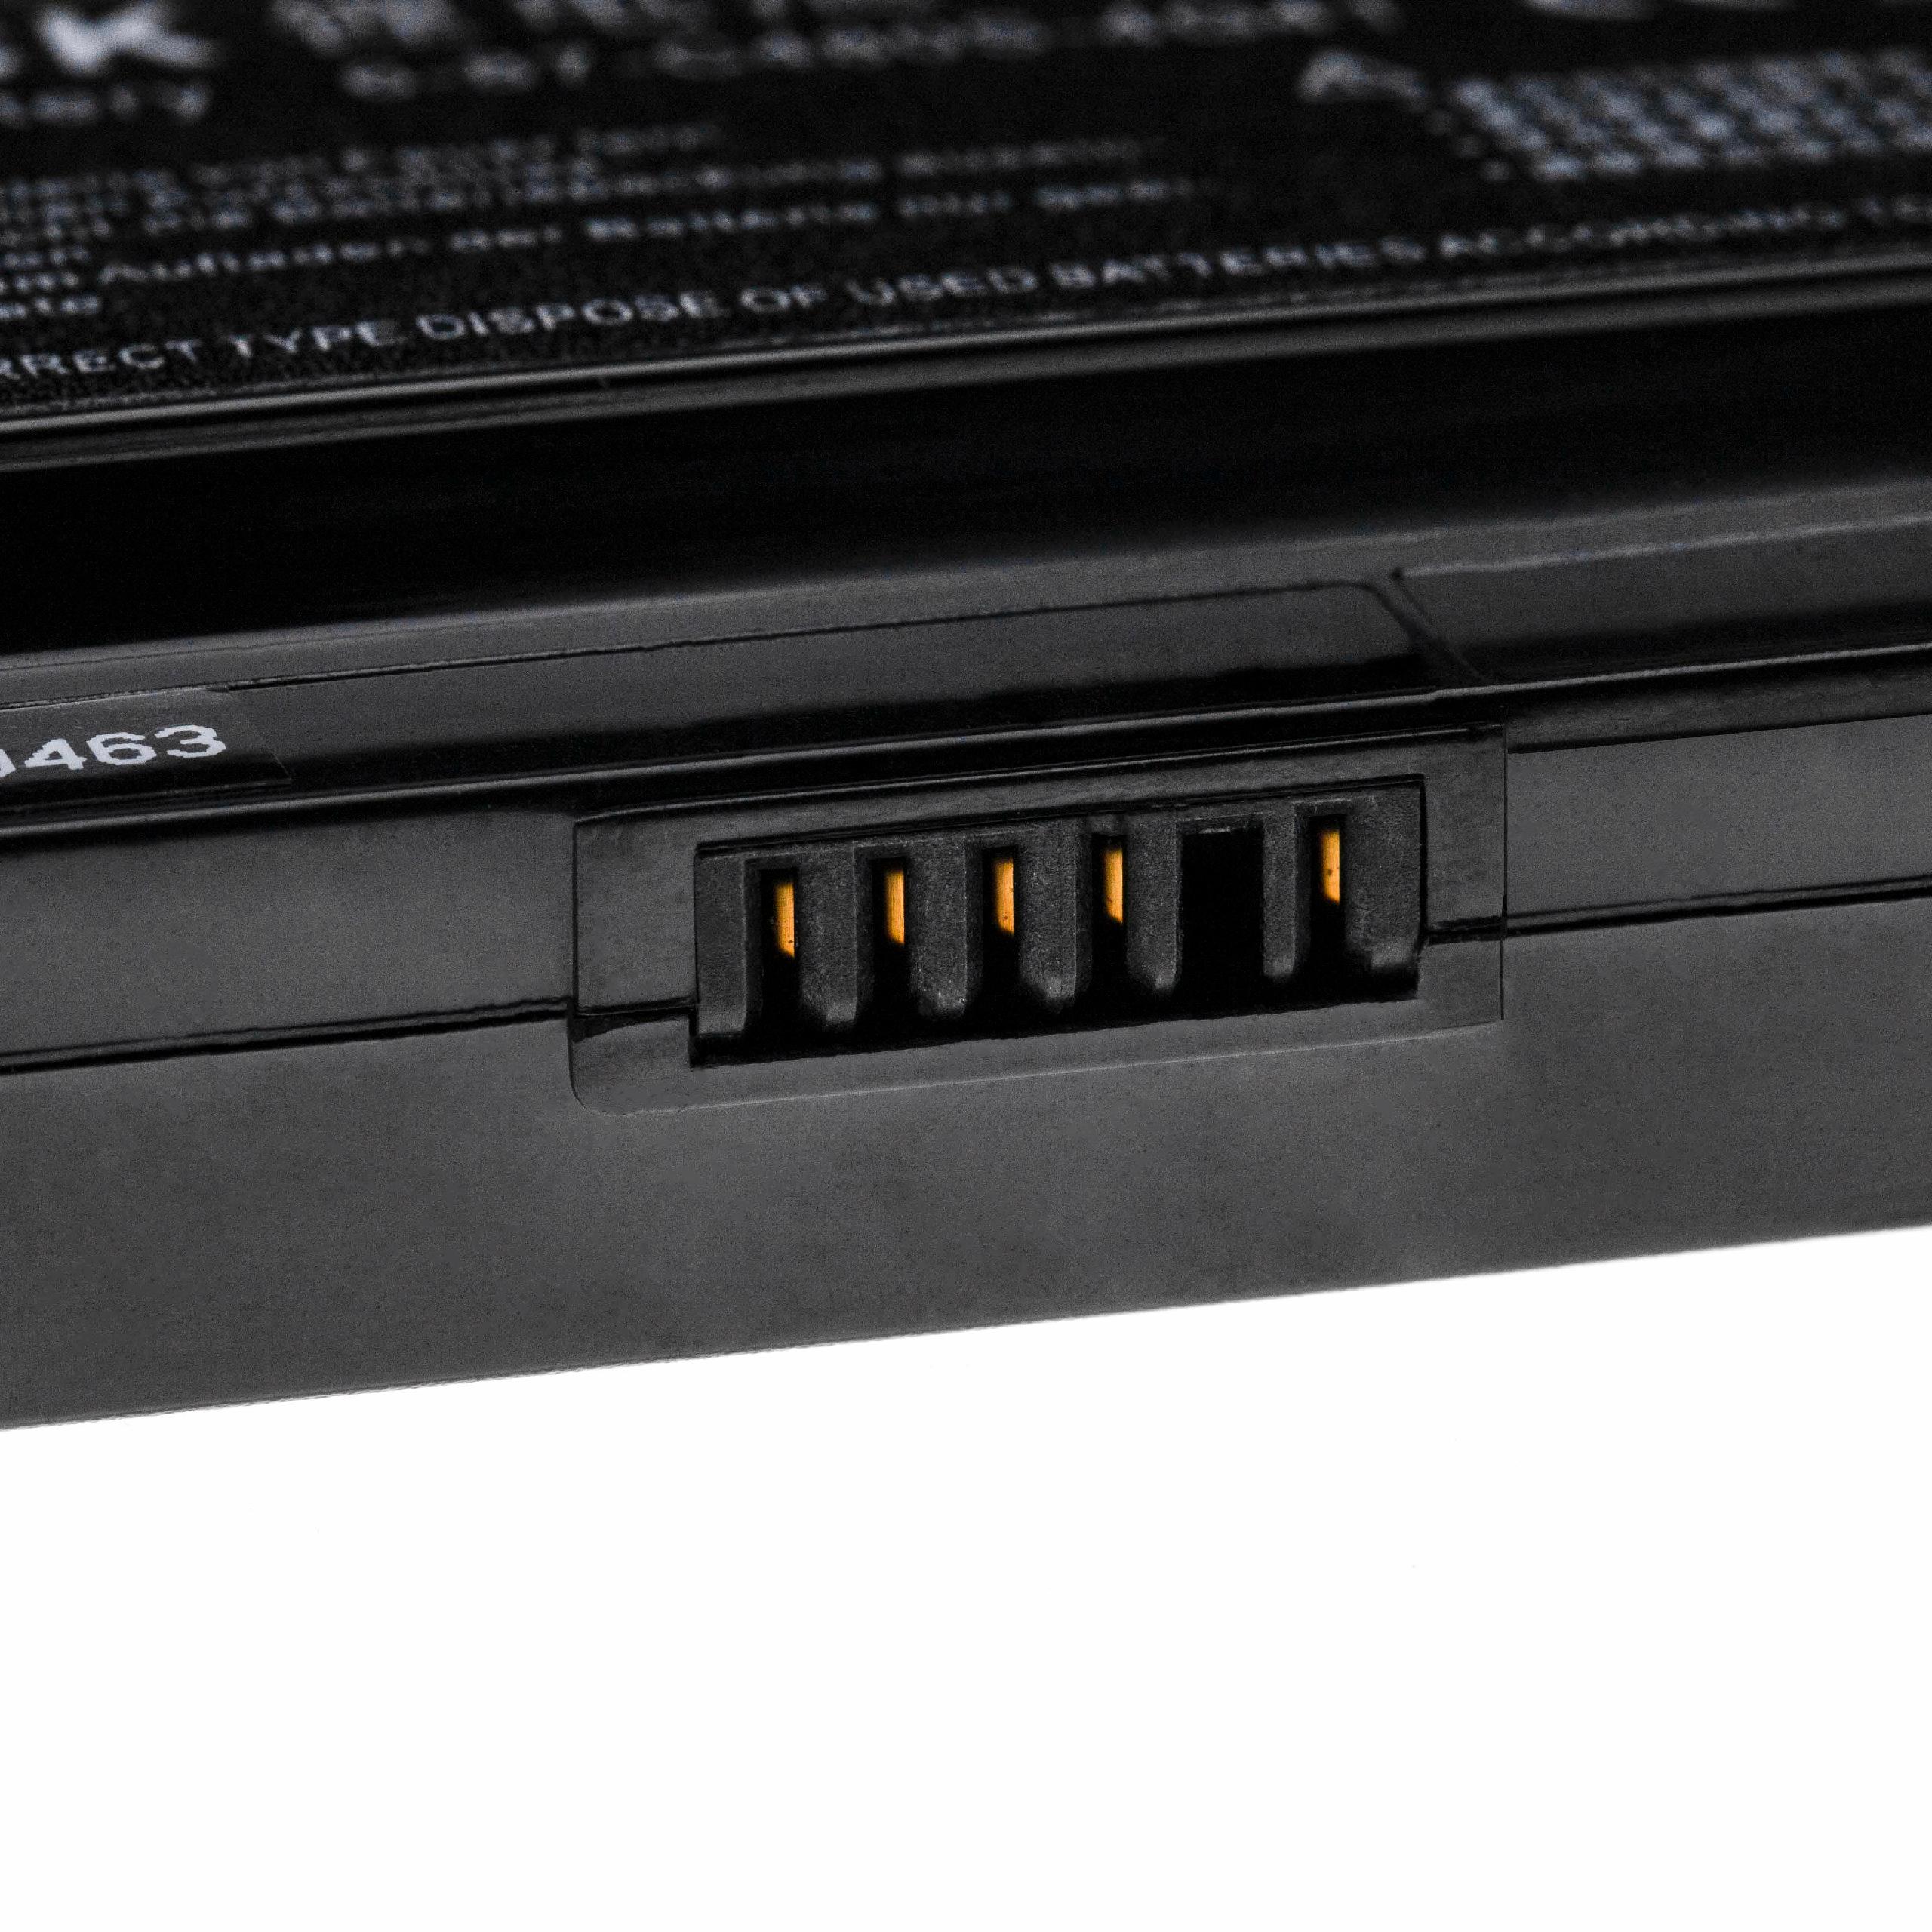 Batterie remplace Clevo 6-87-c480s-4g41, 6-87-C480S-4G4 pour ordinateur portable - 5200mAh 11,1V Li-ion, noir